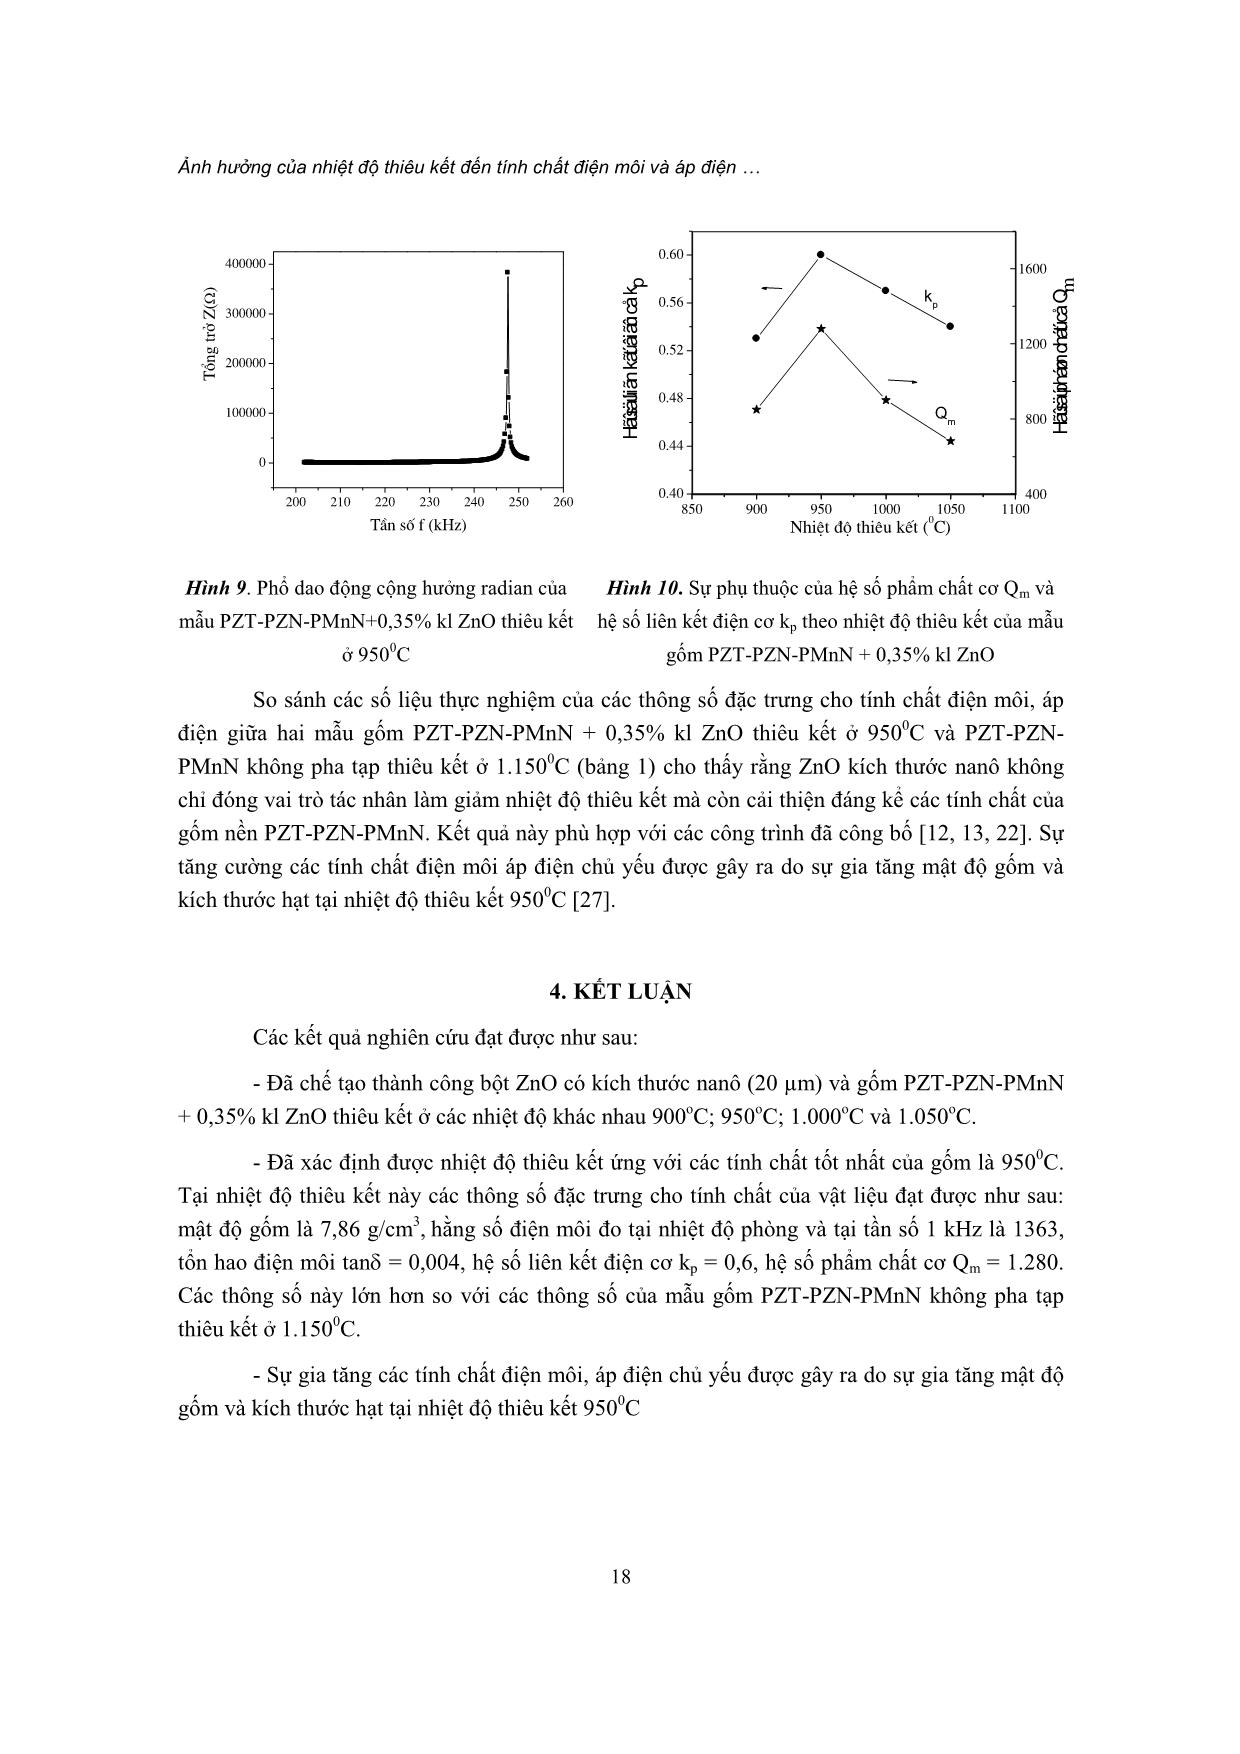 Ảnh hưởng của nhiệt độ thiêu kết đến tính chất điện môi và áp điện của hệ gốm PZT-PZN-PMnN+0,35% kl ZnO Nano trang 8